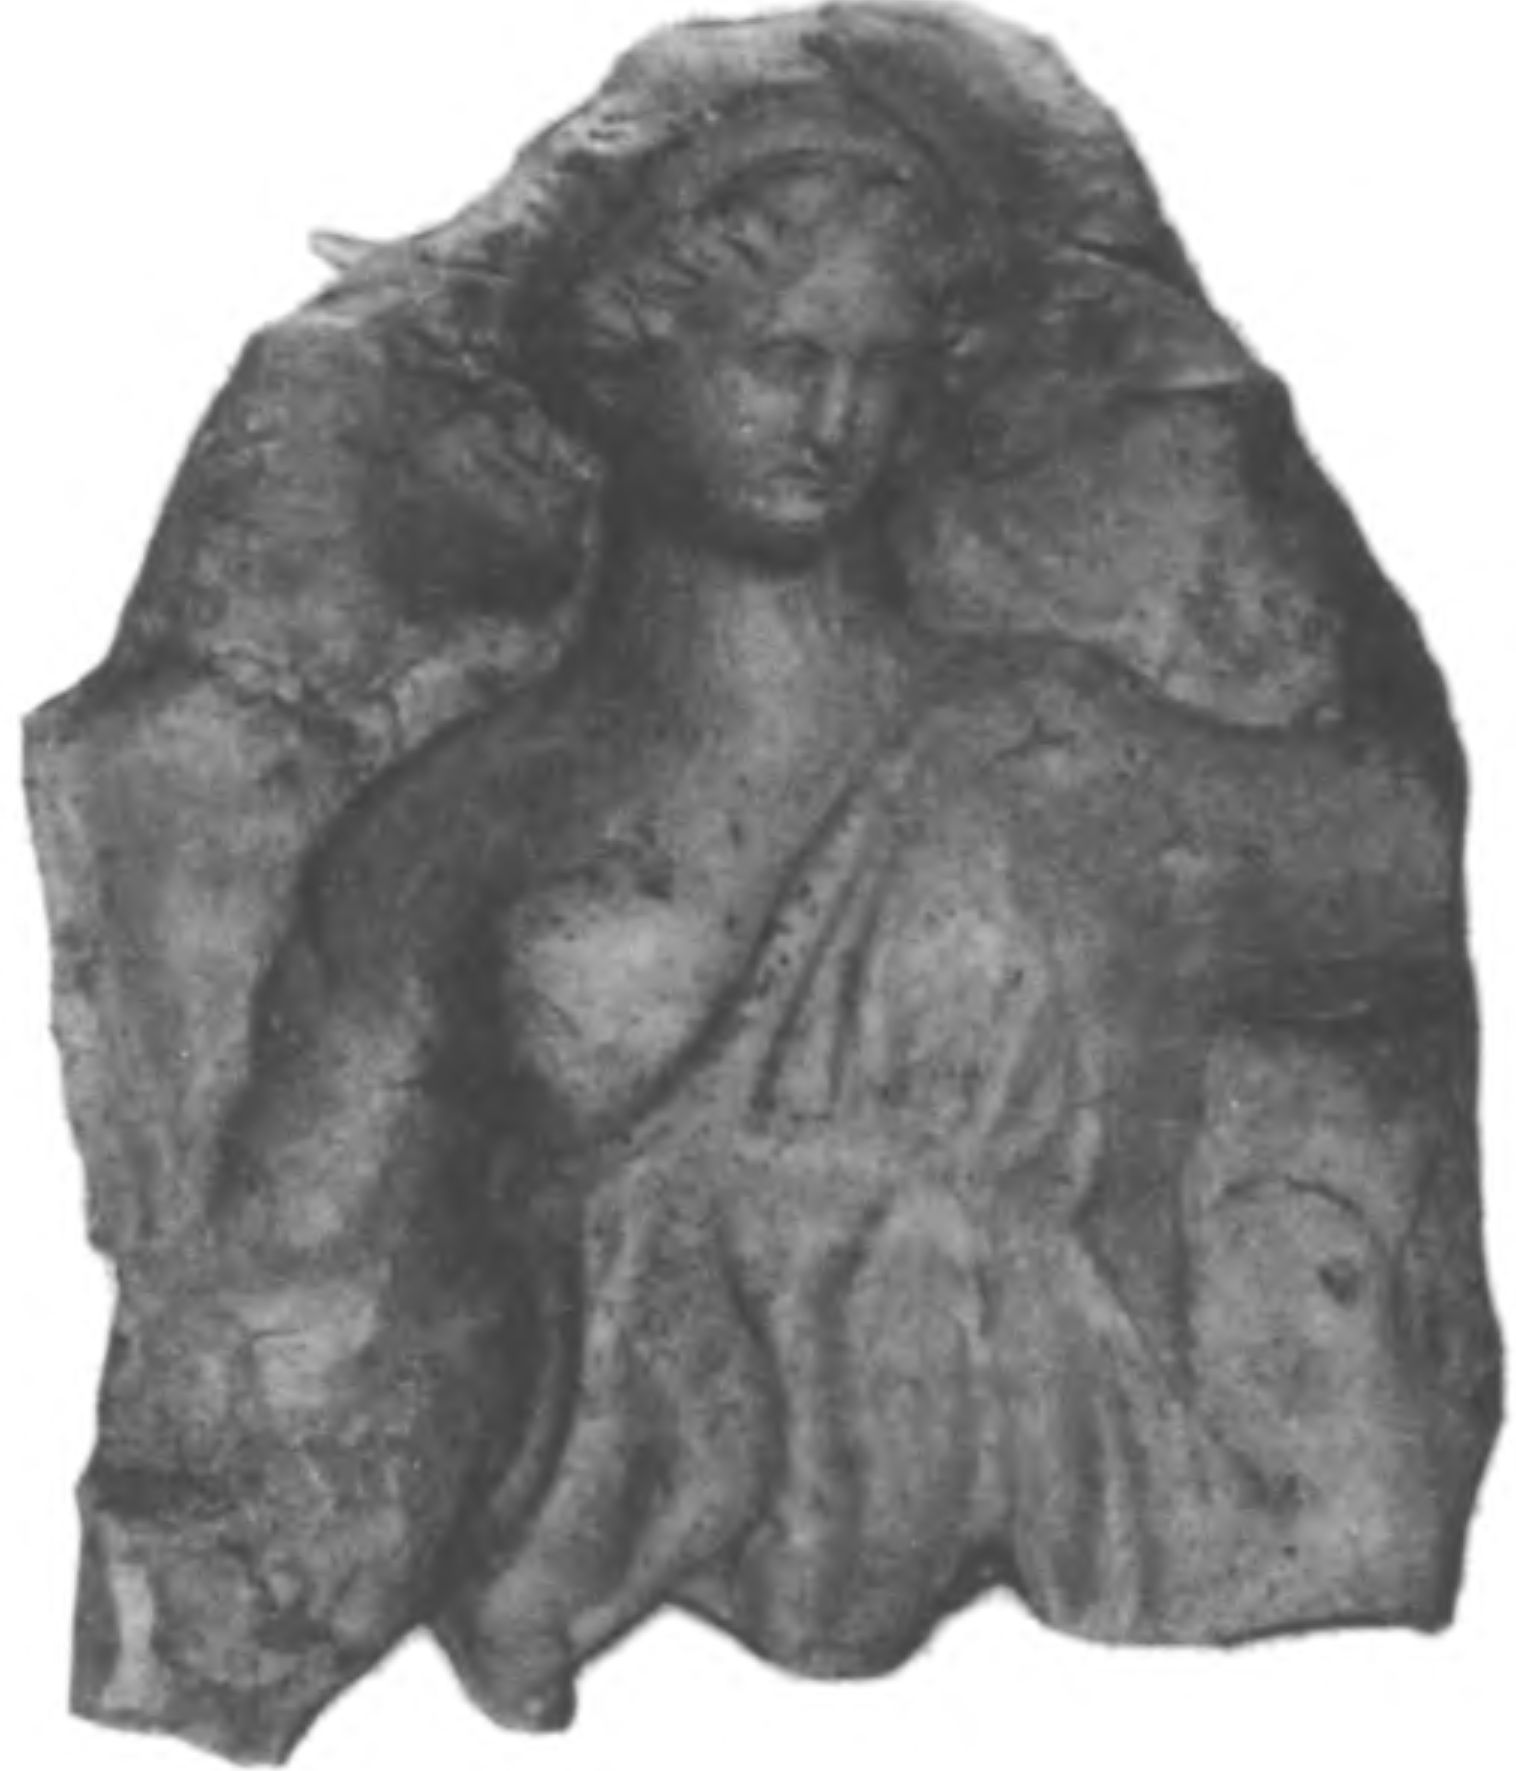 Рис. 12. Терракота с изображением богини. III—II вв. до н. э.